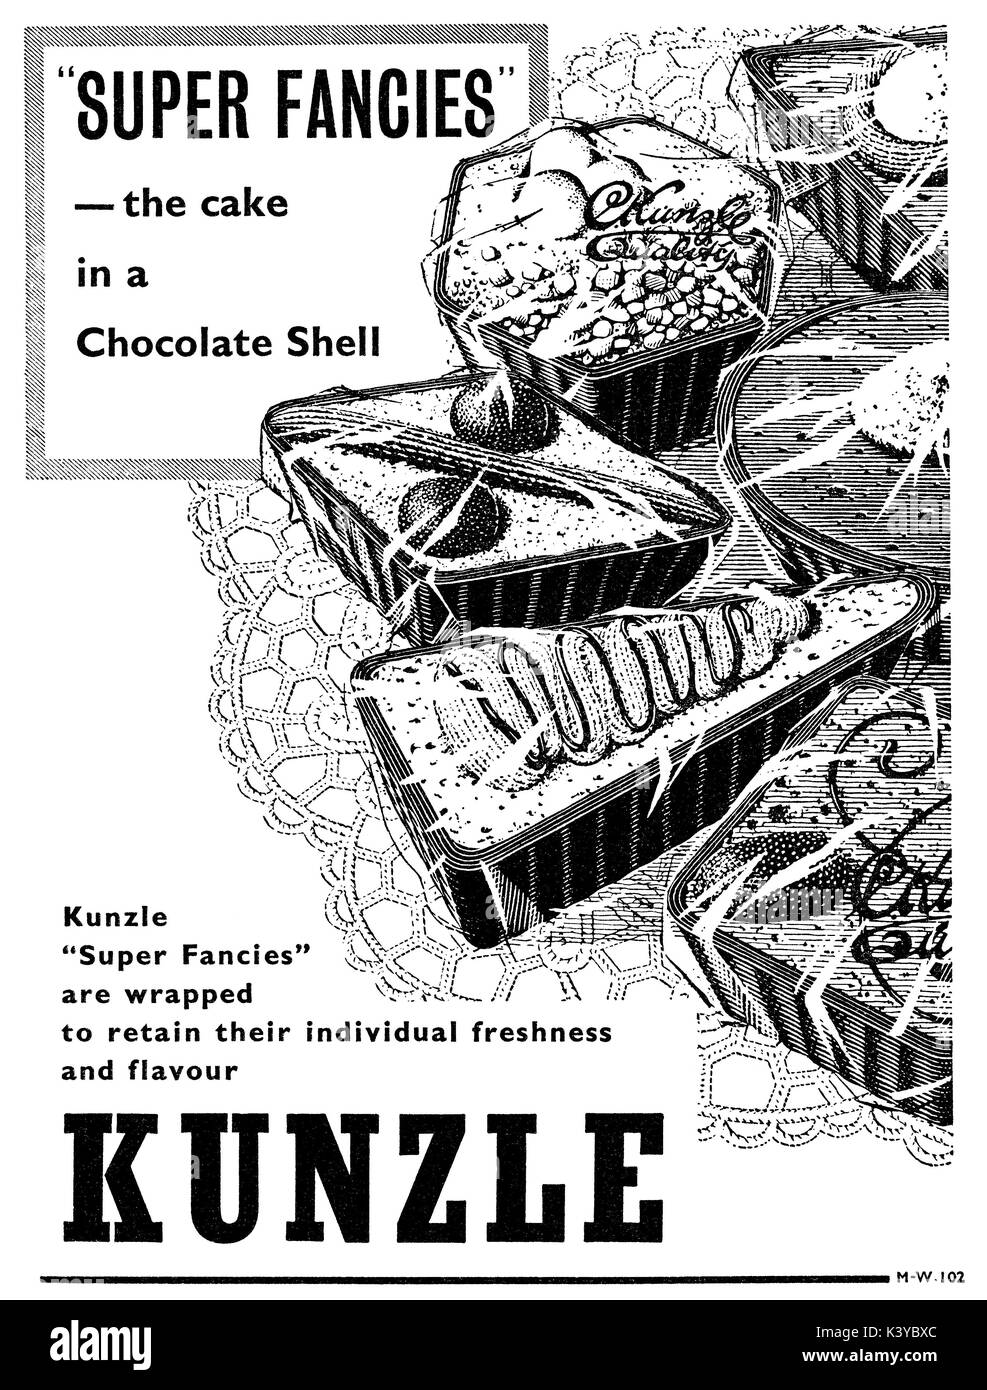 1959 British pubblicità per Kunzle torte. Foto Stock